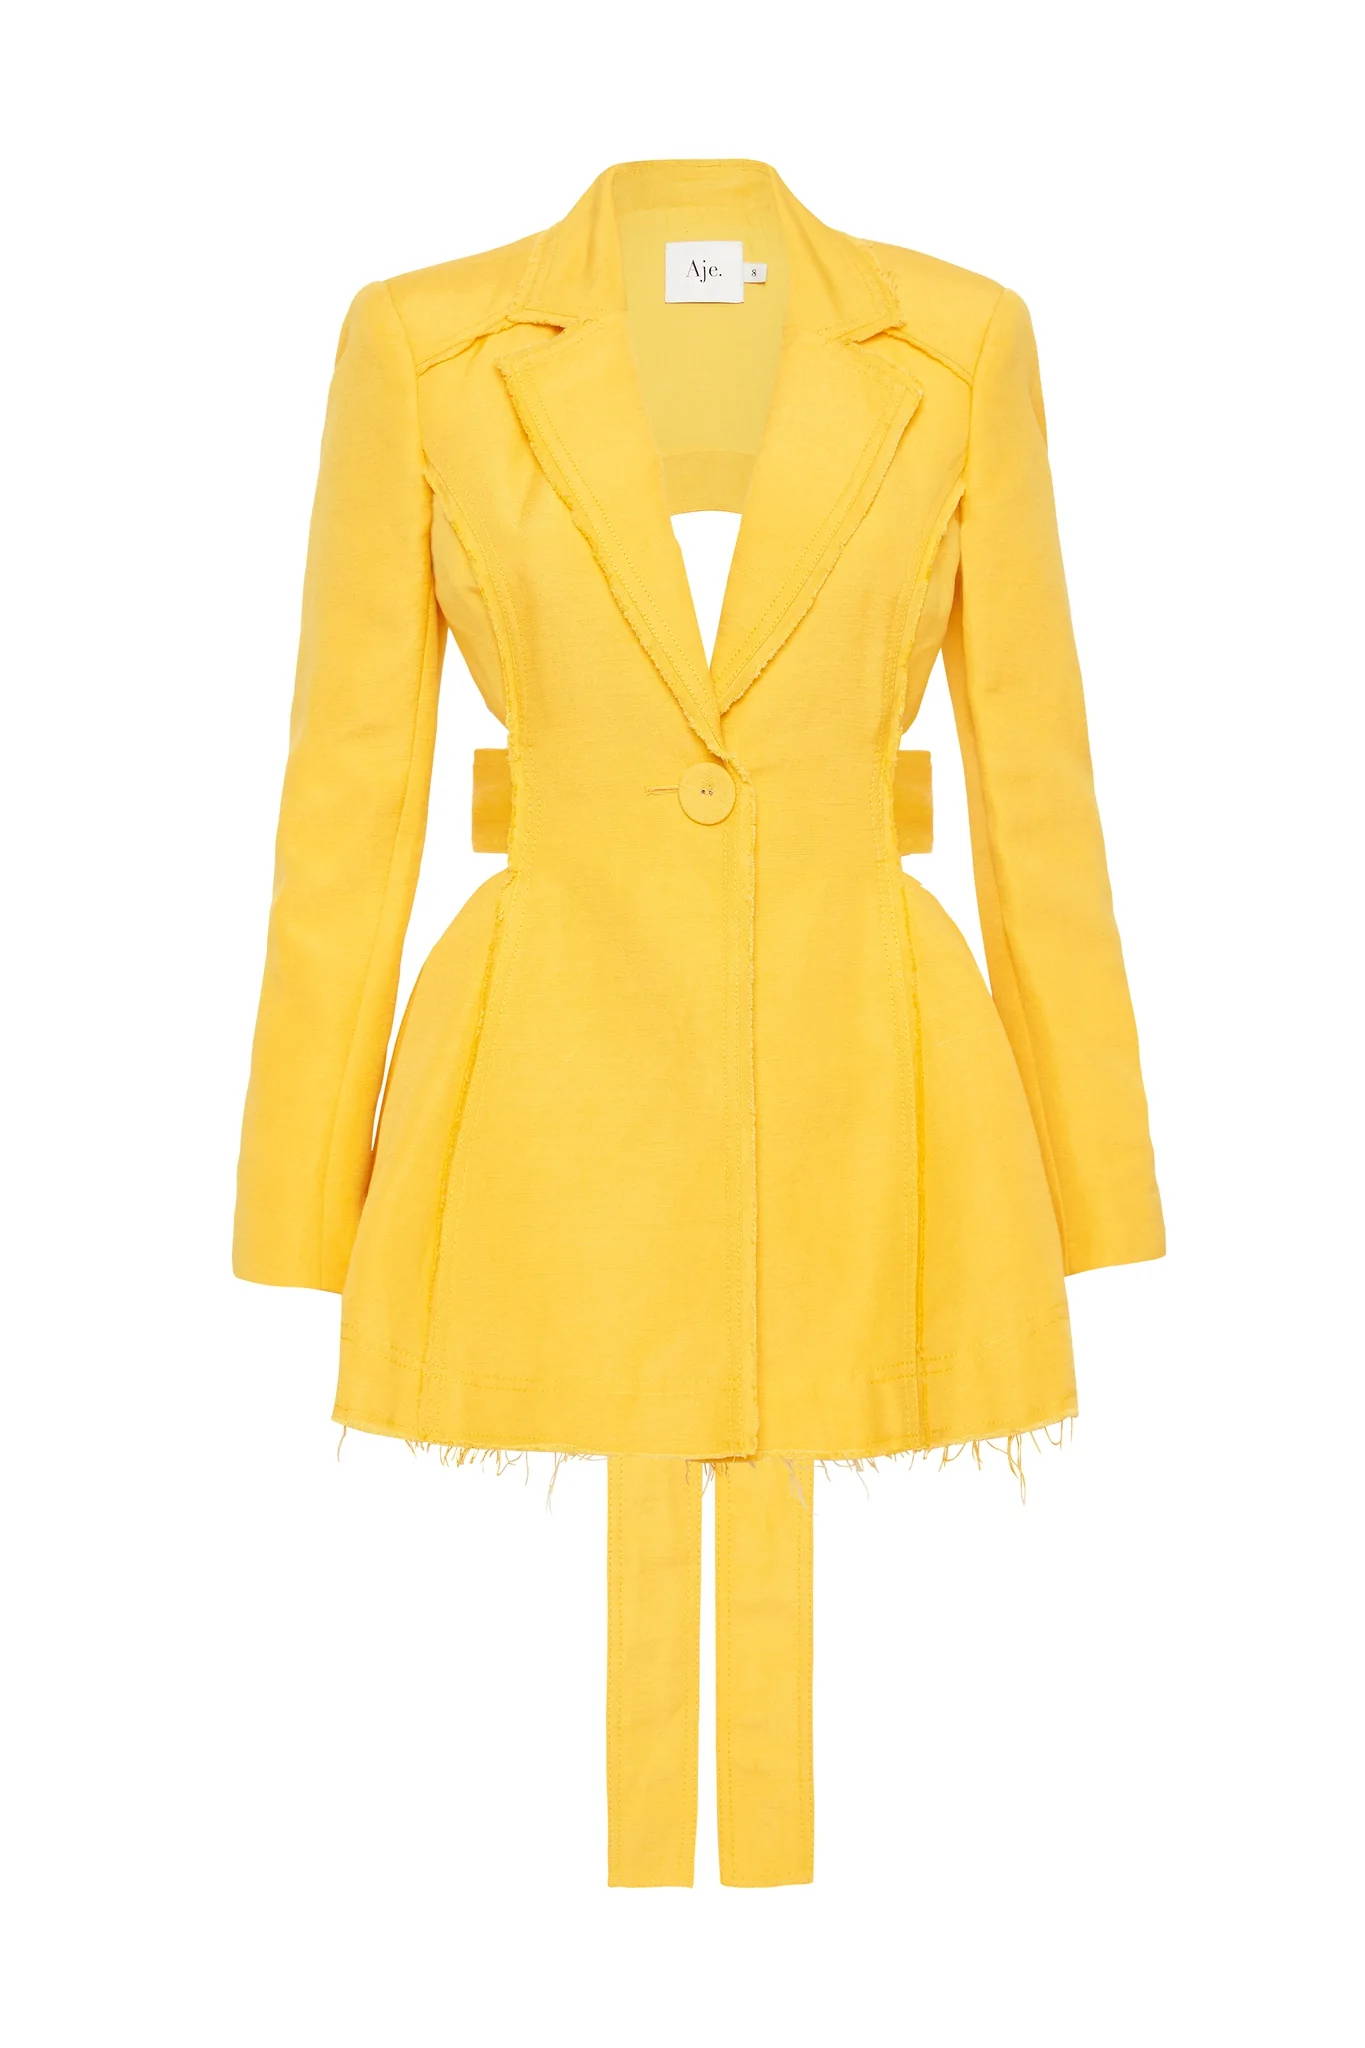 Yellow blazer dress